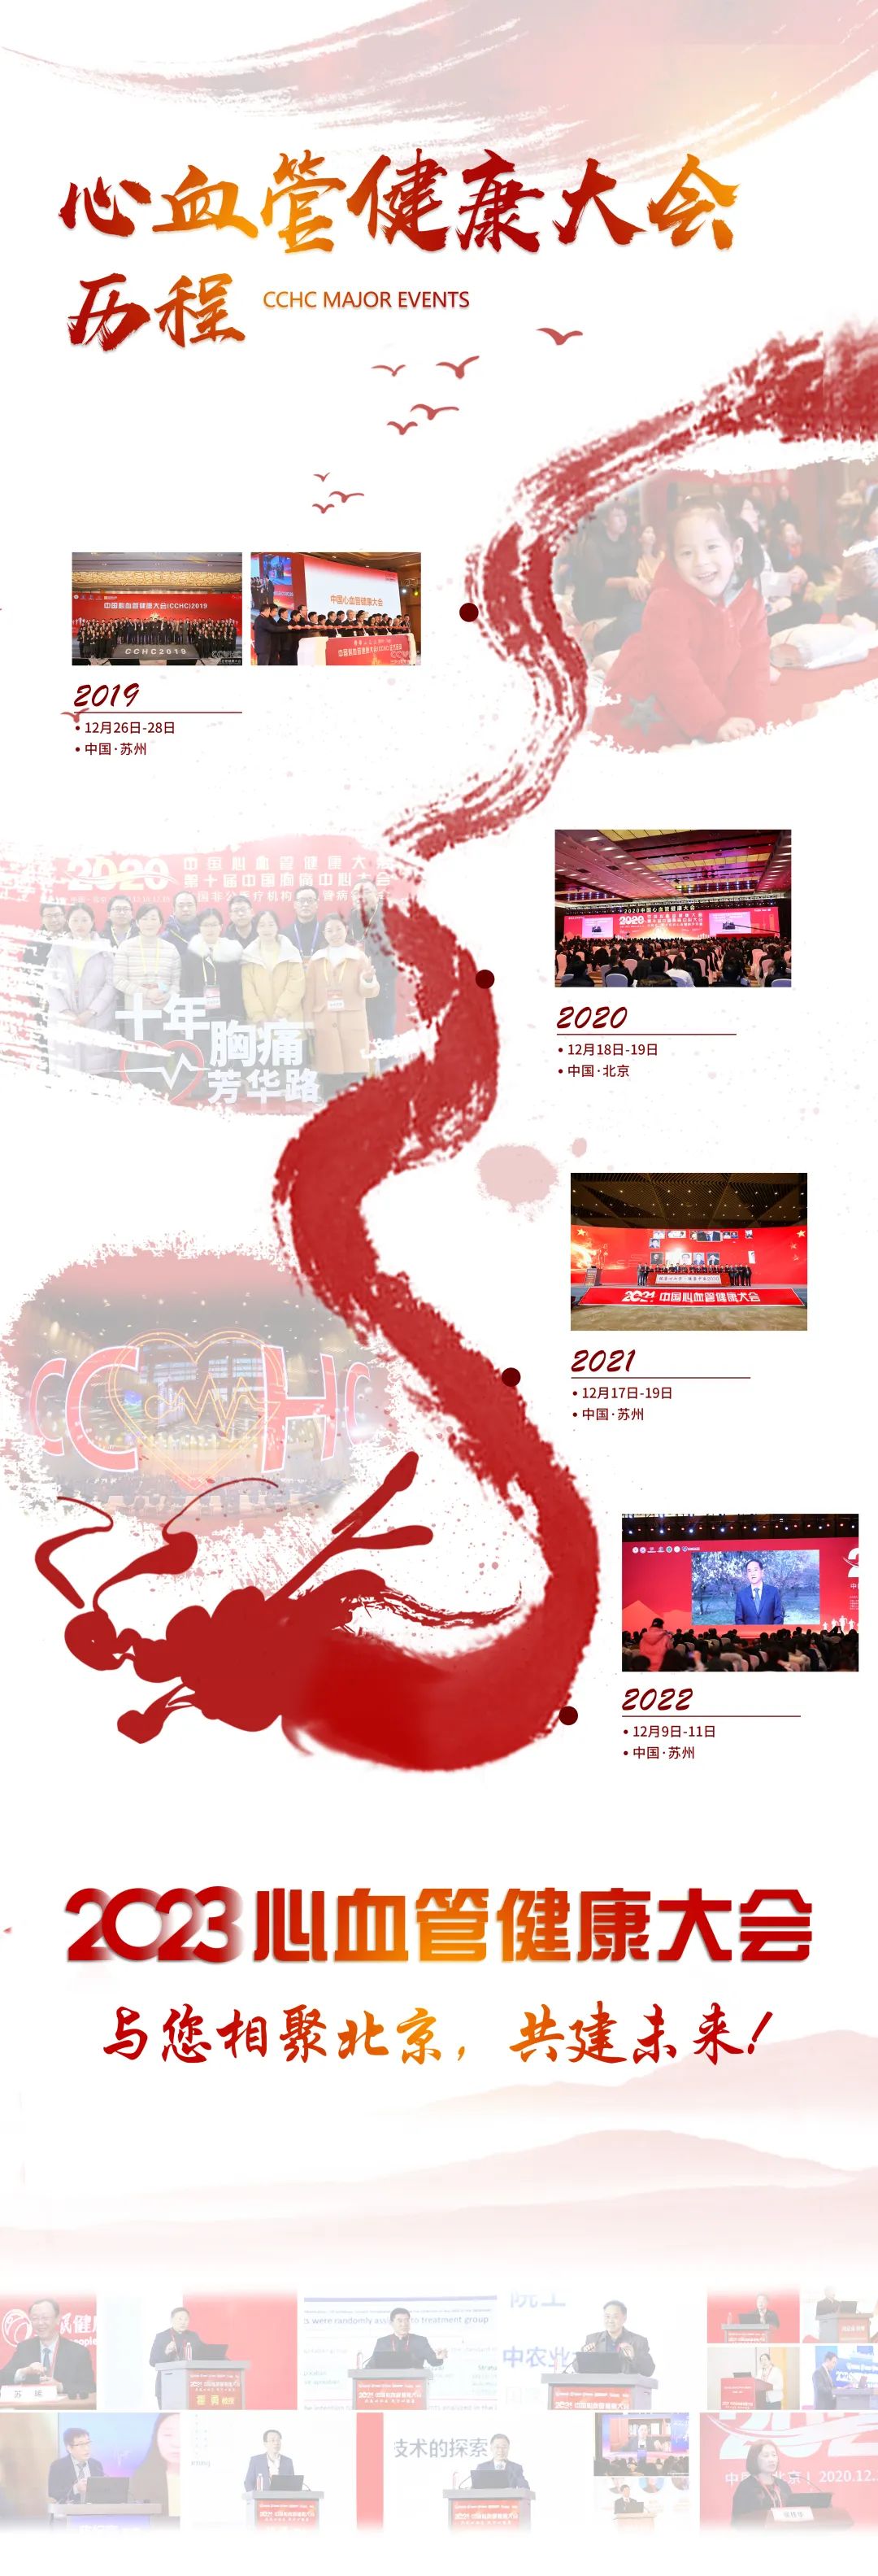 会议通知｜2023心血管健康大会将于11月24-26日在京召开